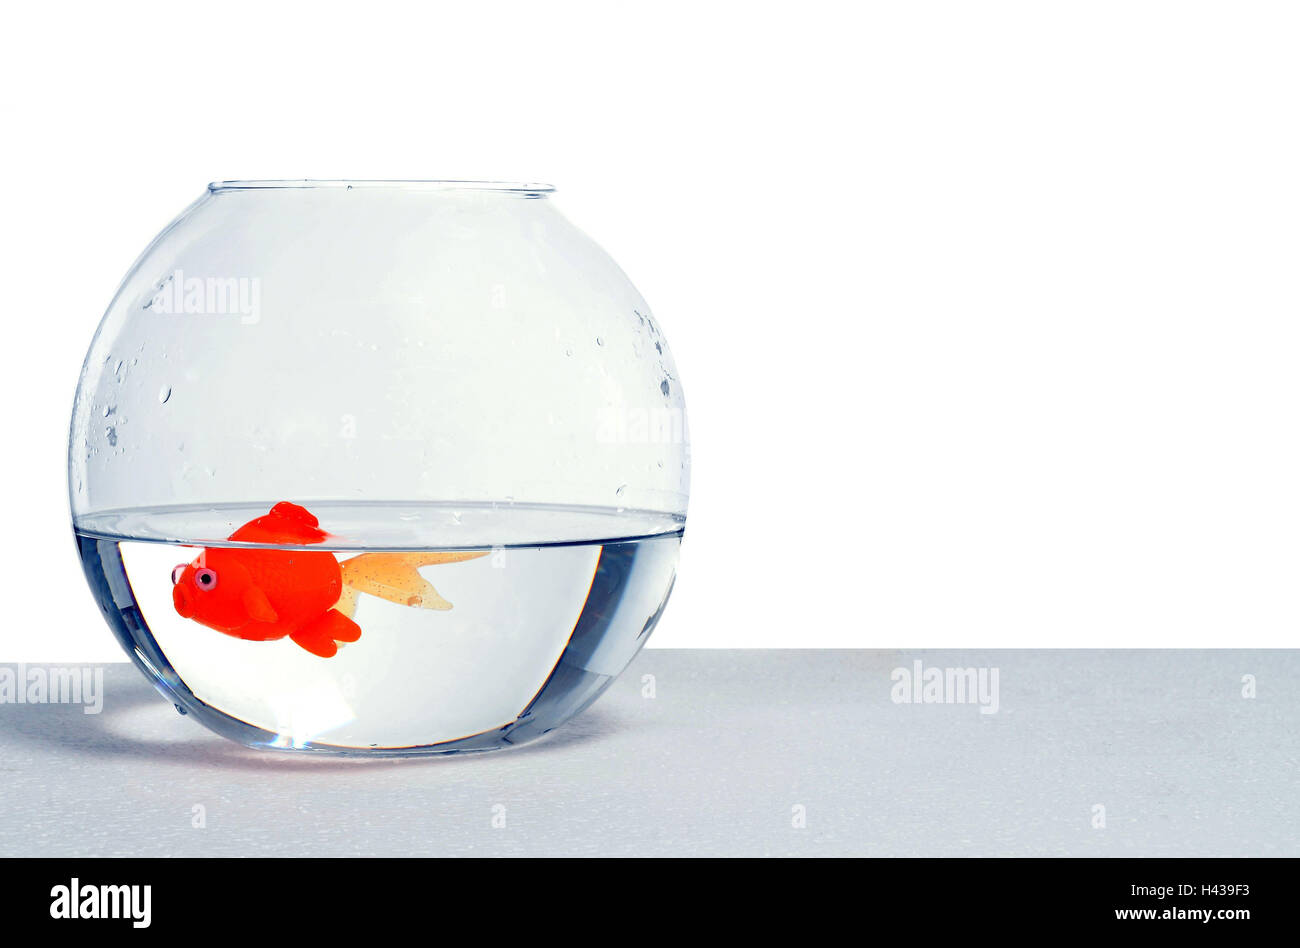 fish tank toys for goldfish